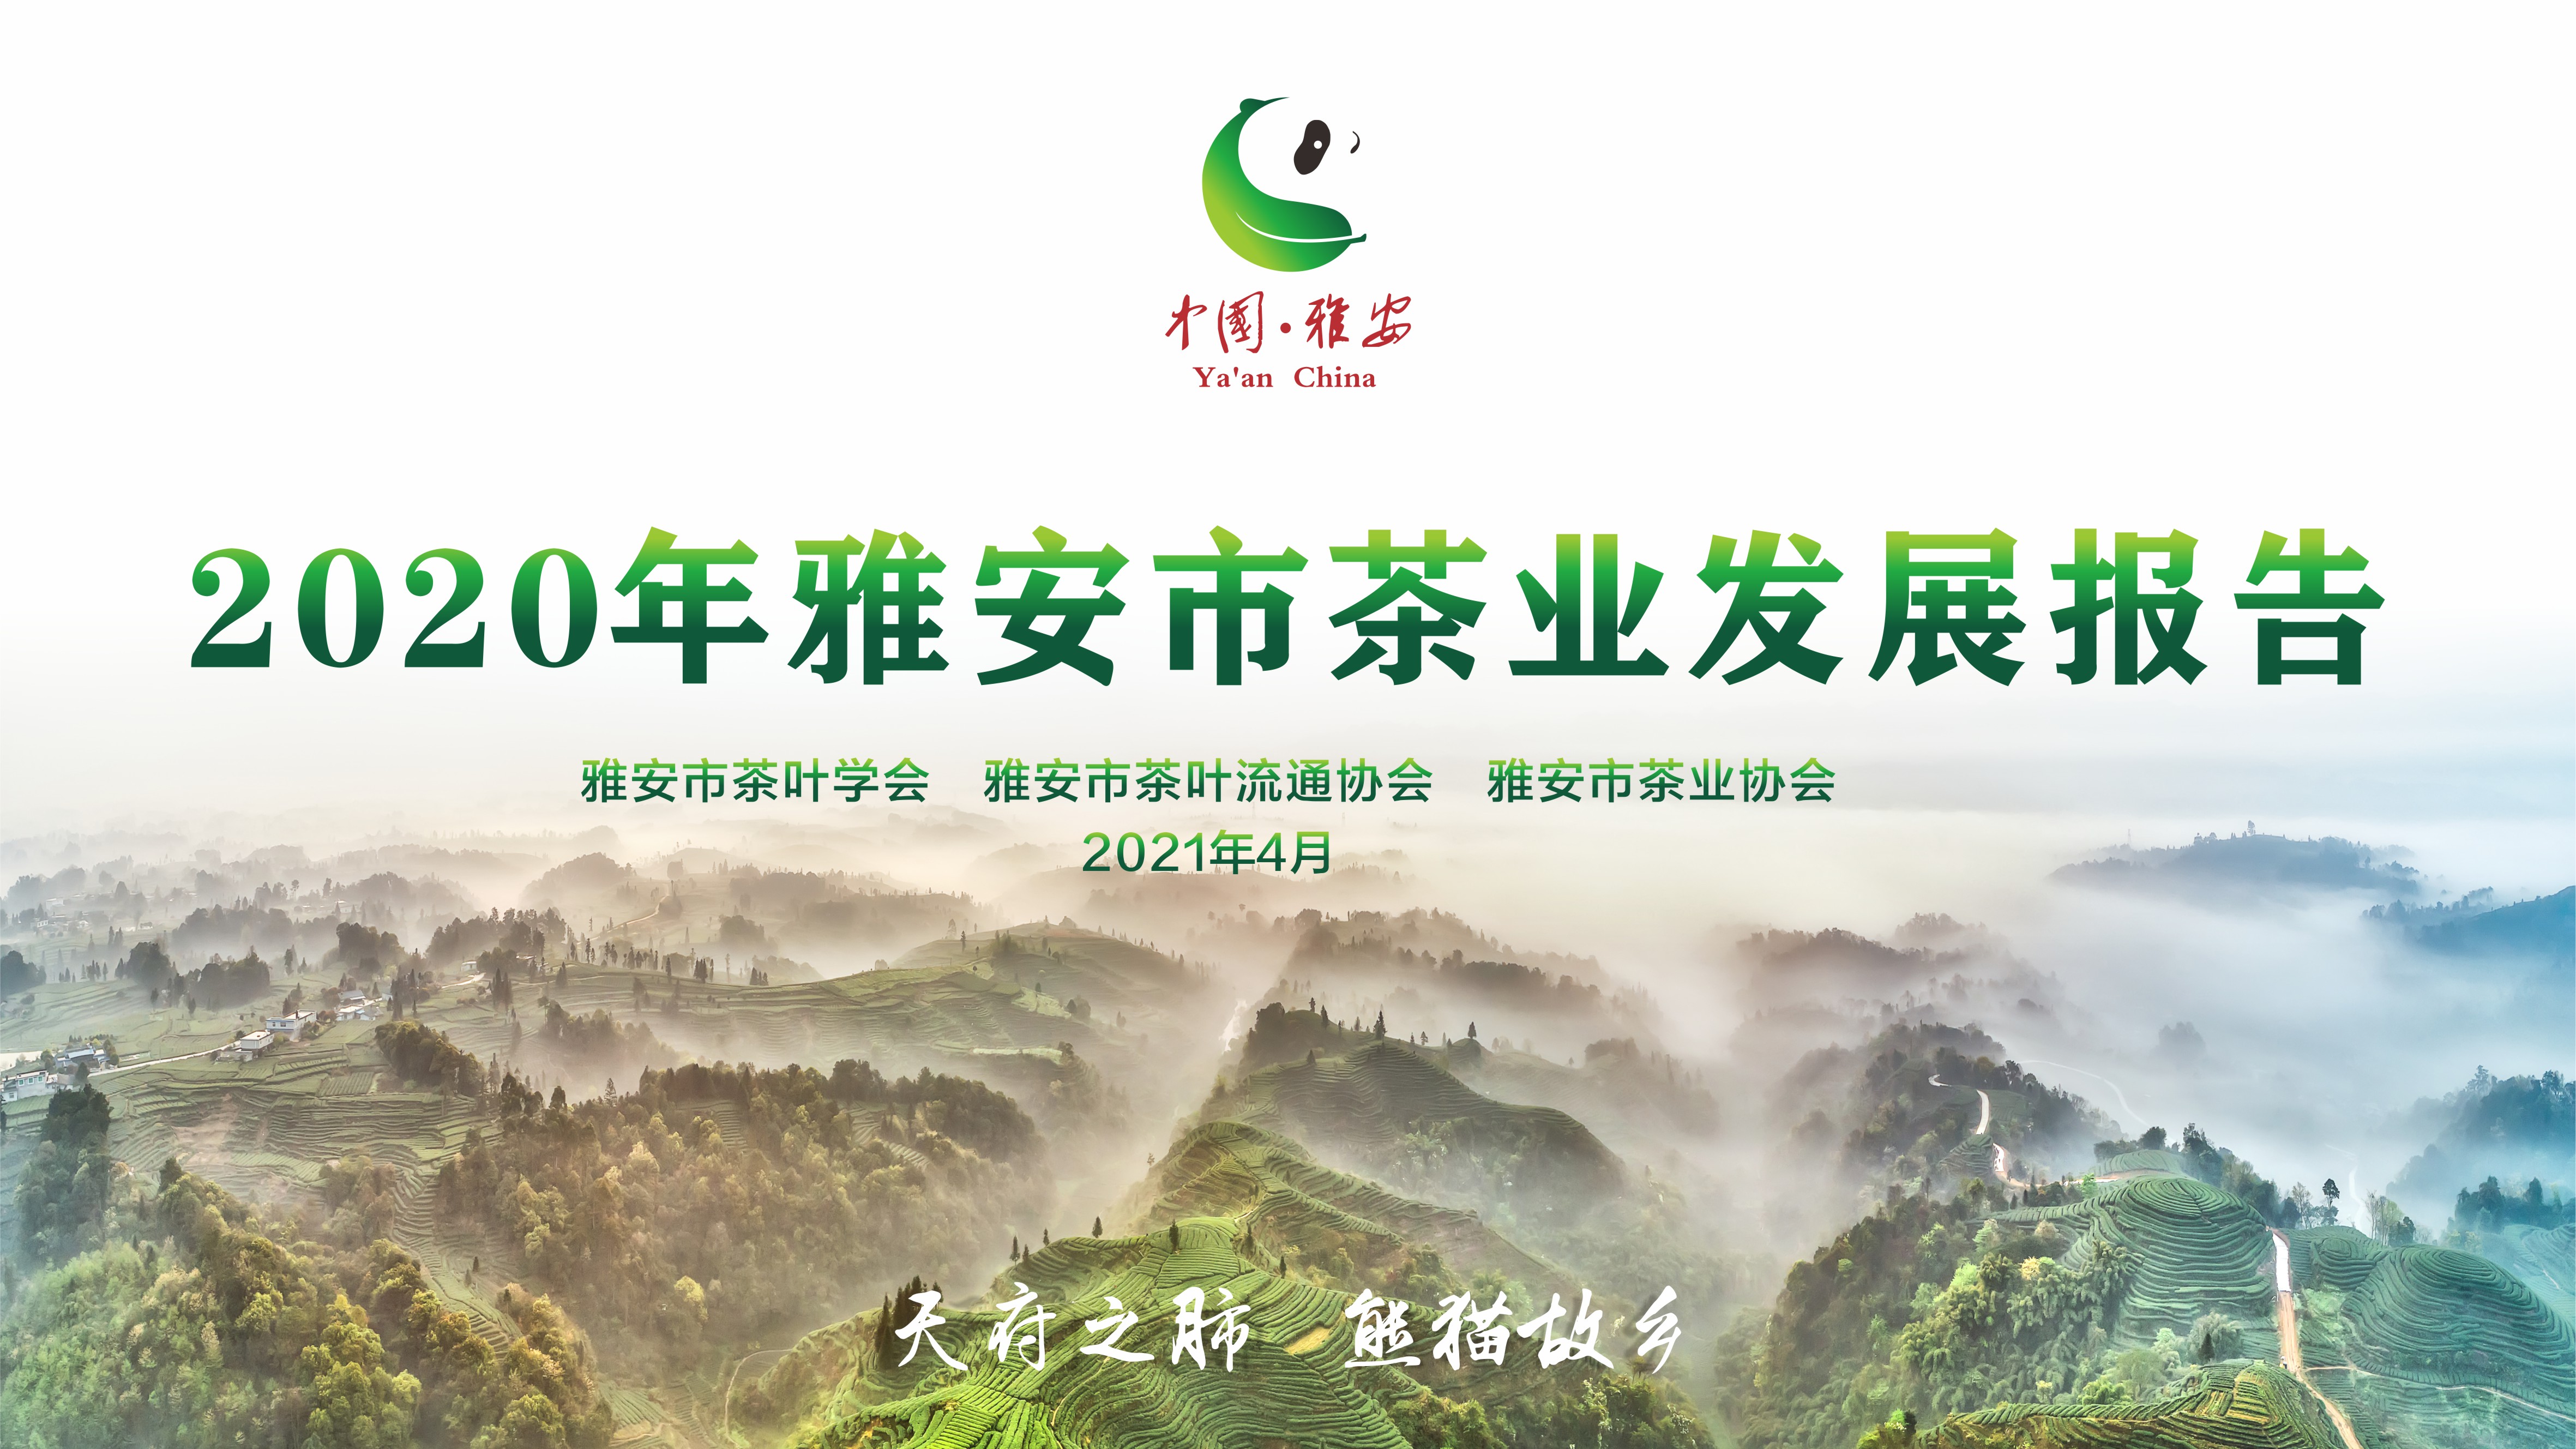 2020年雅安市茶业发展报告在四川茶博会上正式发布